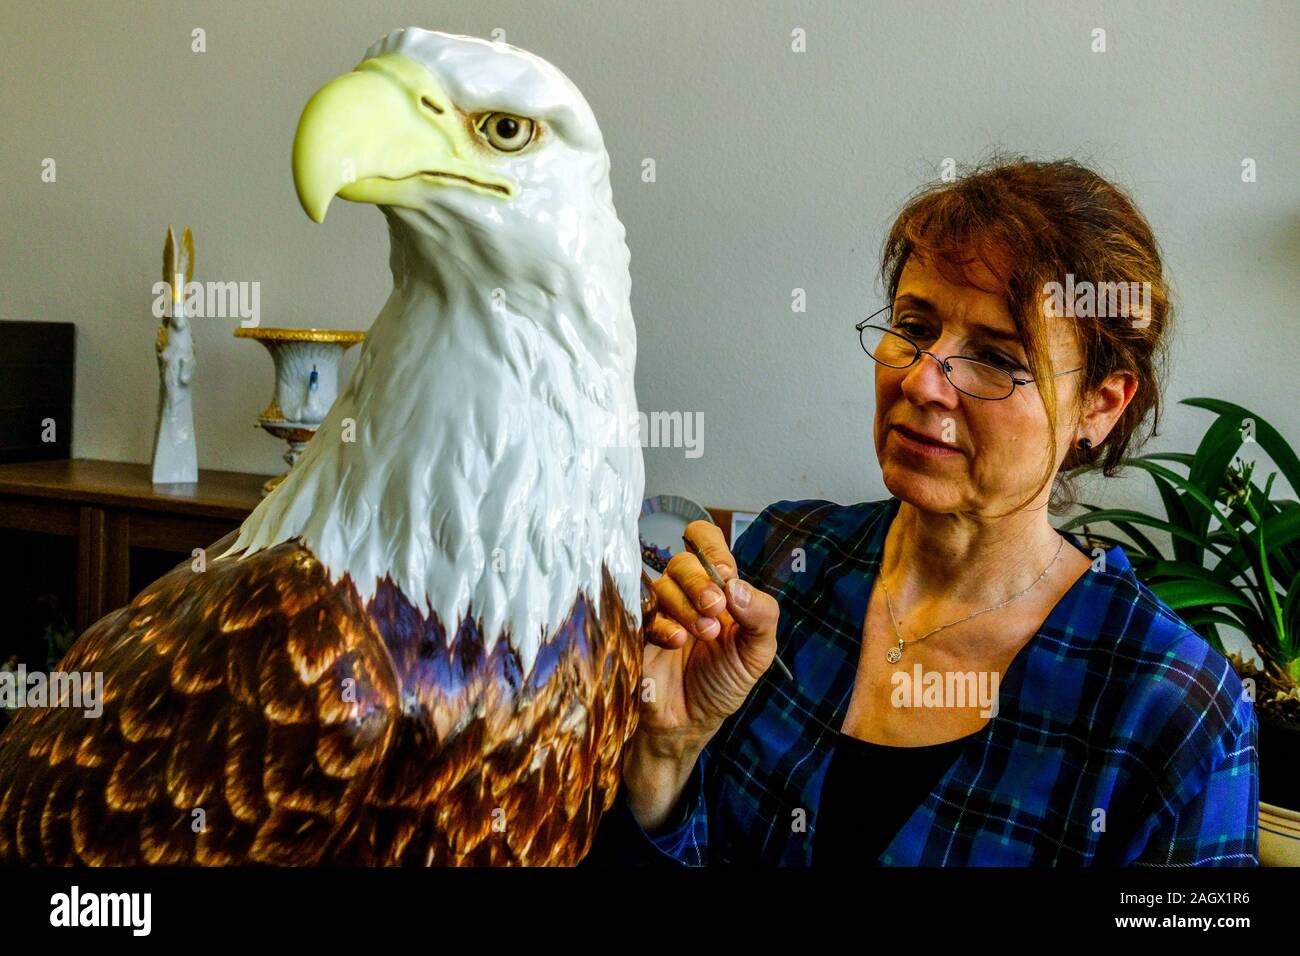 Meissen figurine aigle, la femme en atelier d'art décorent l'aigle Bald Meissen Allemagne Banque D'Images